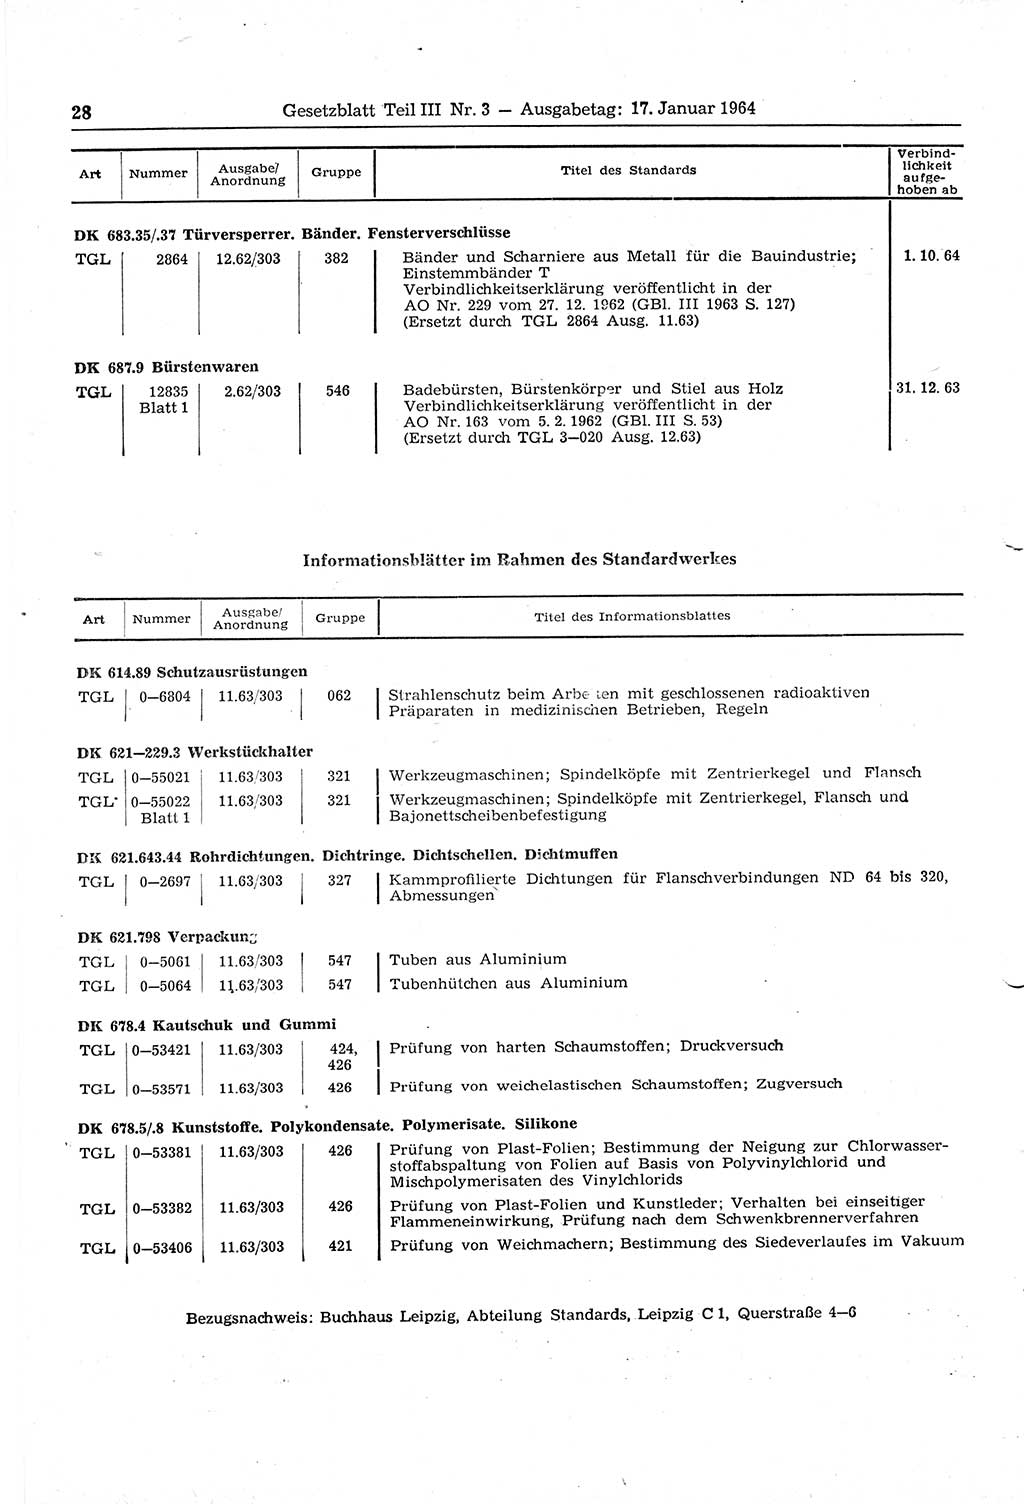 Gesetzblatt (GBl.) der Deutschen Demokratischen Republik (DDR) Teil ⅠⅠⅠ 1964, Seite 28 (GBl. DDR ⅠⅠⅠ 1964, S. 28)